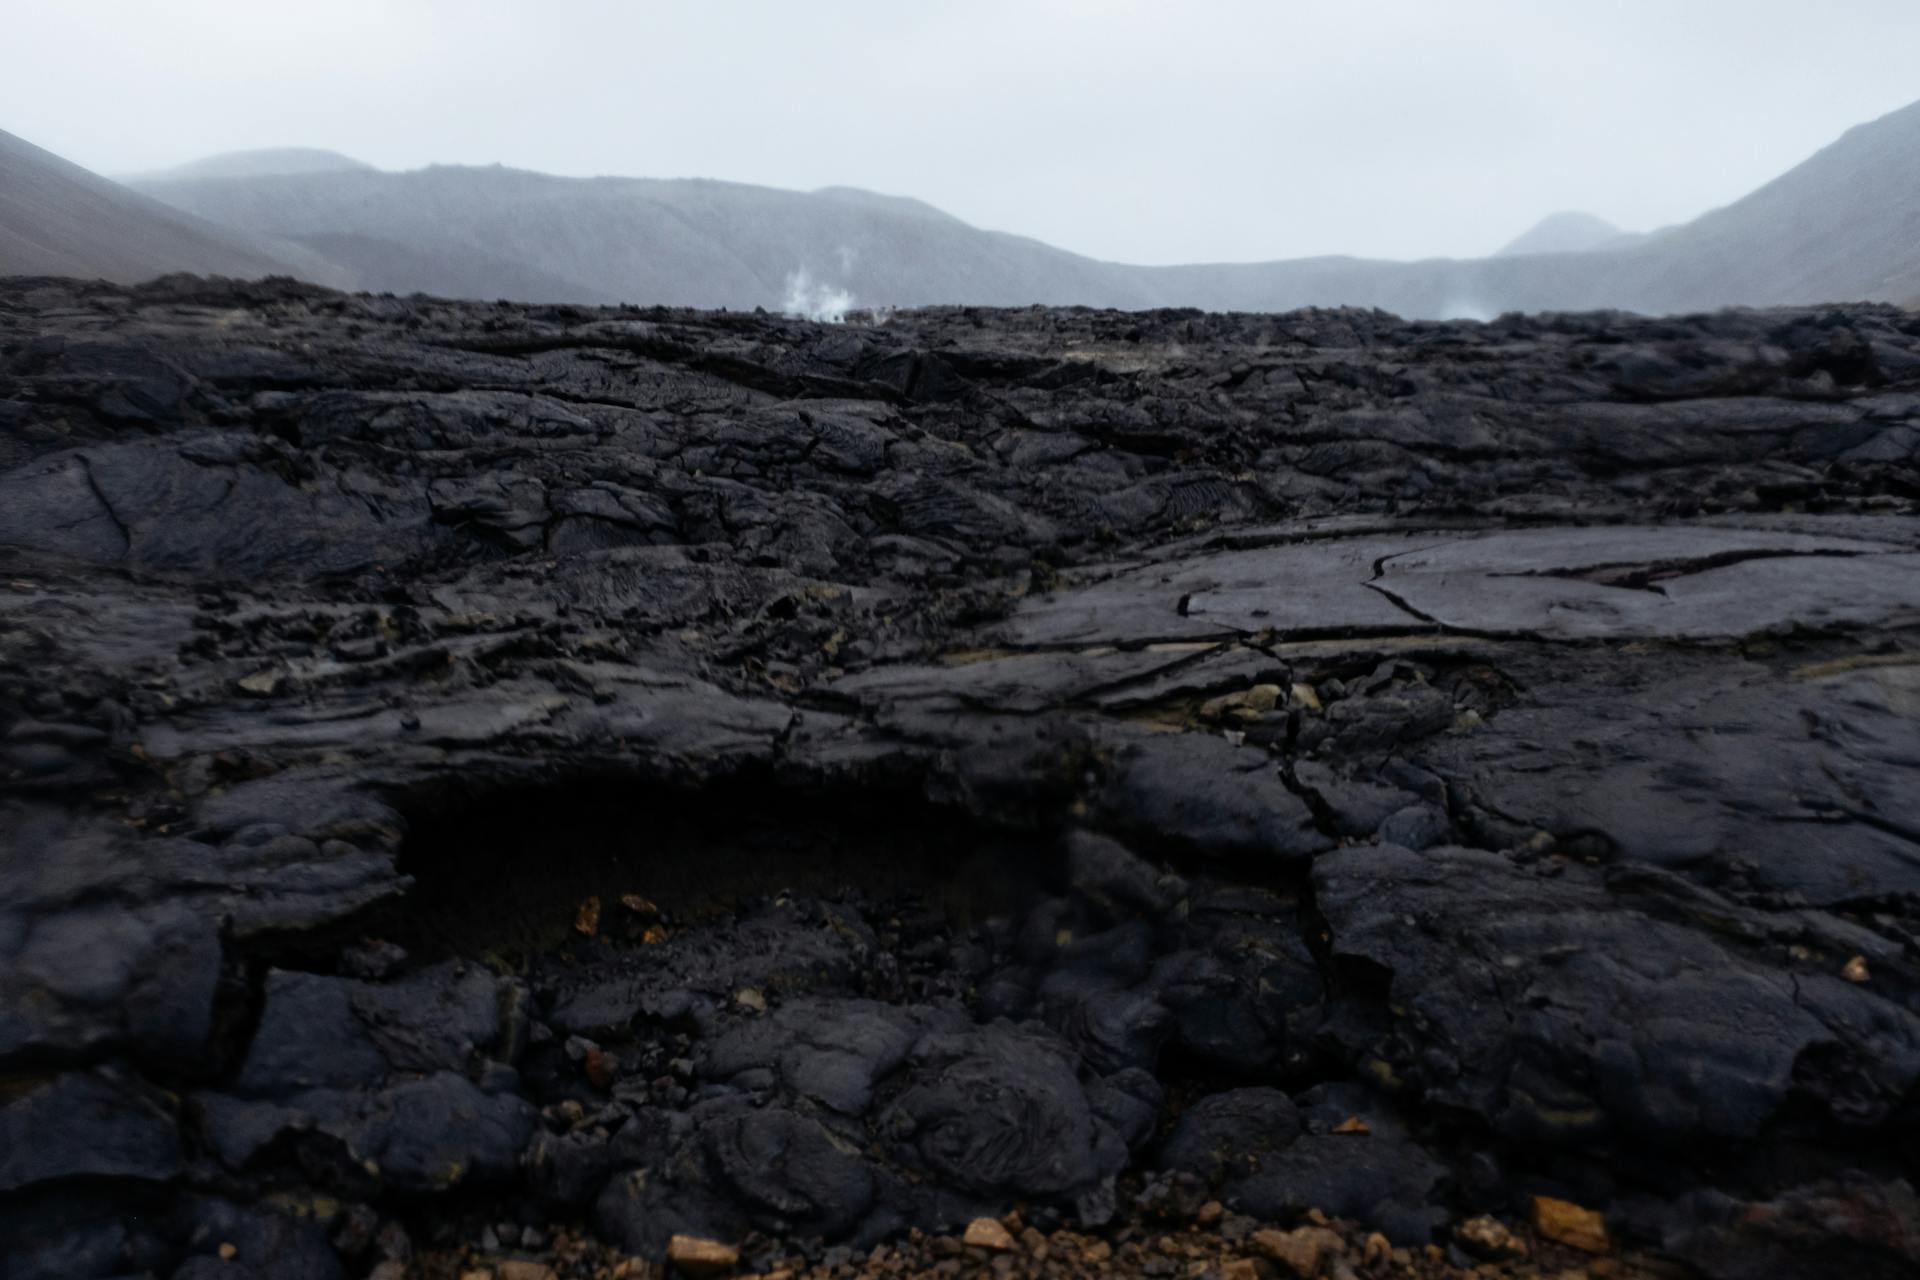 Dark Landscape with Textured Lava